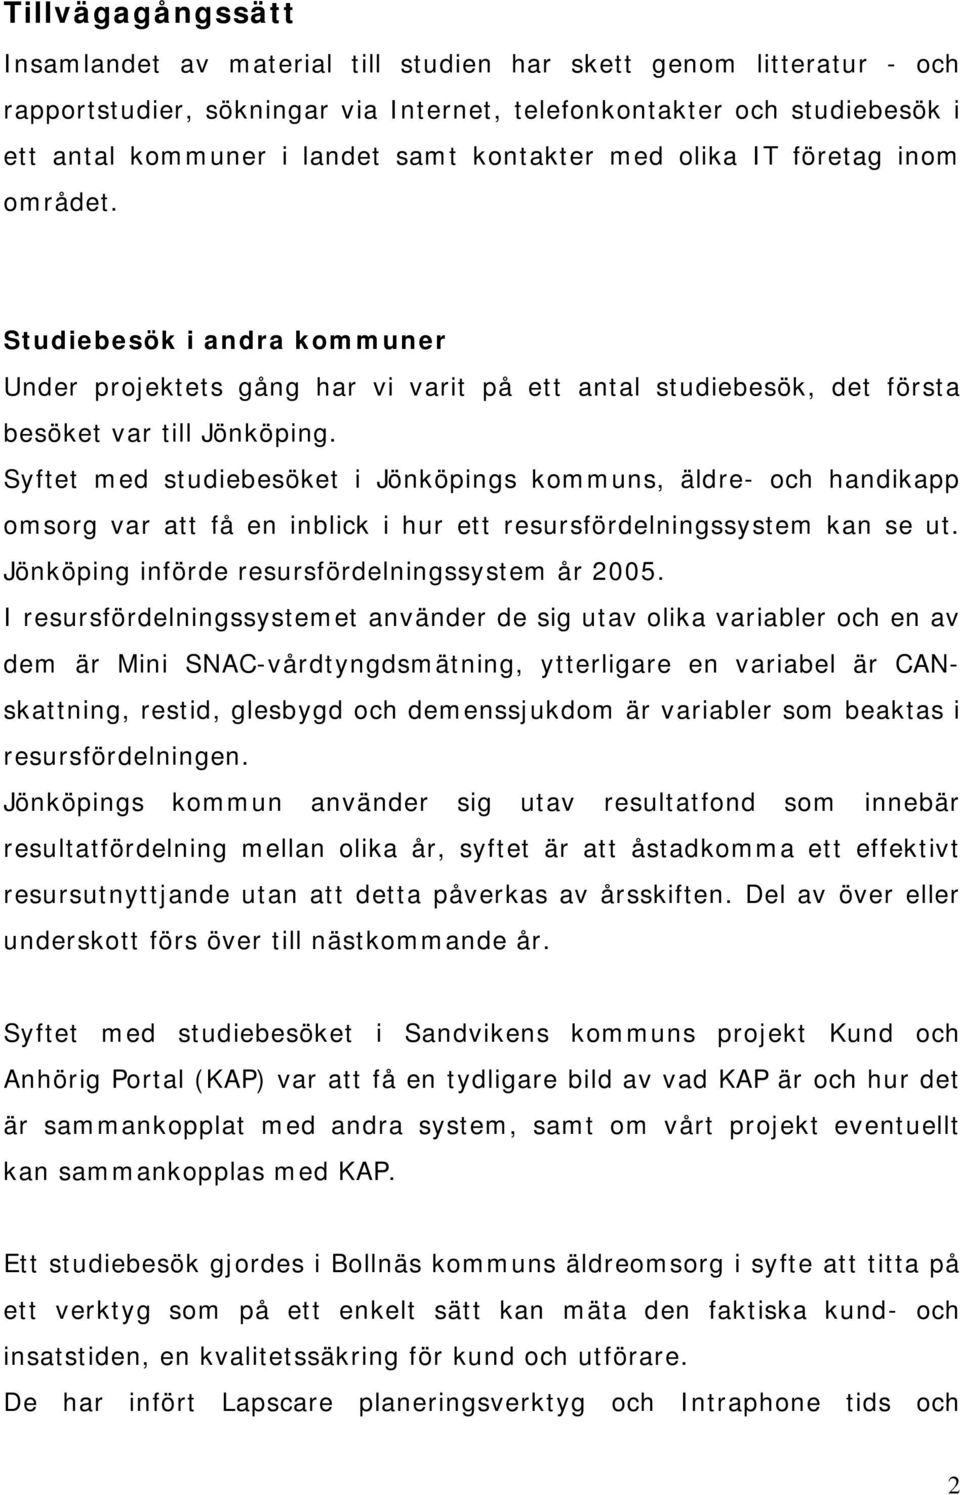 Syftet med studiebesöket i Jönköpings kommuns, äldre- och handikapp omsorg var att få en inblick i hur ett resursfördelningssystem kan se ut. Jönköping införde resursfördelningssystem år 2005.